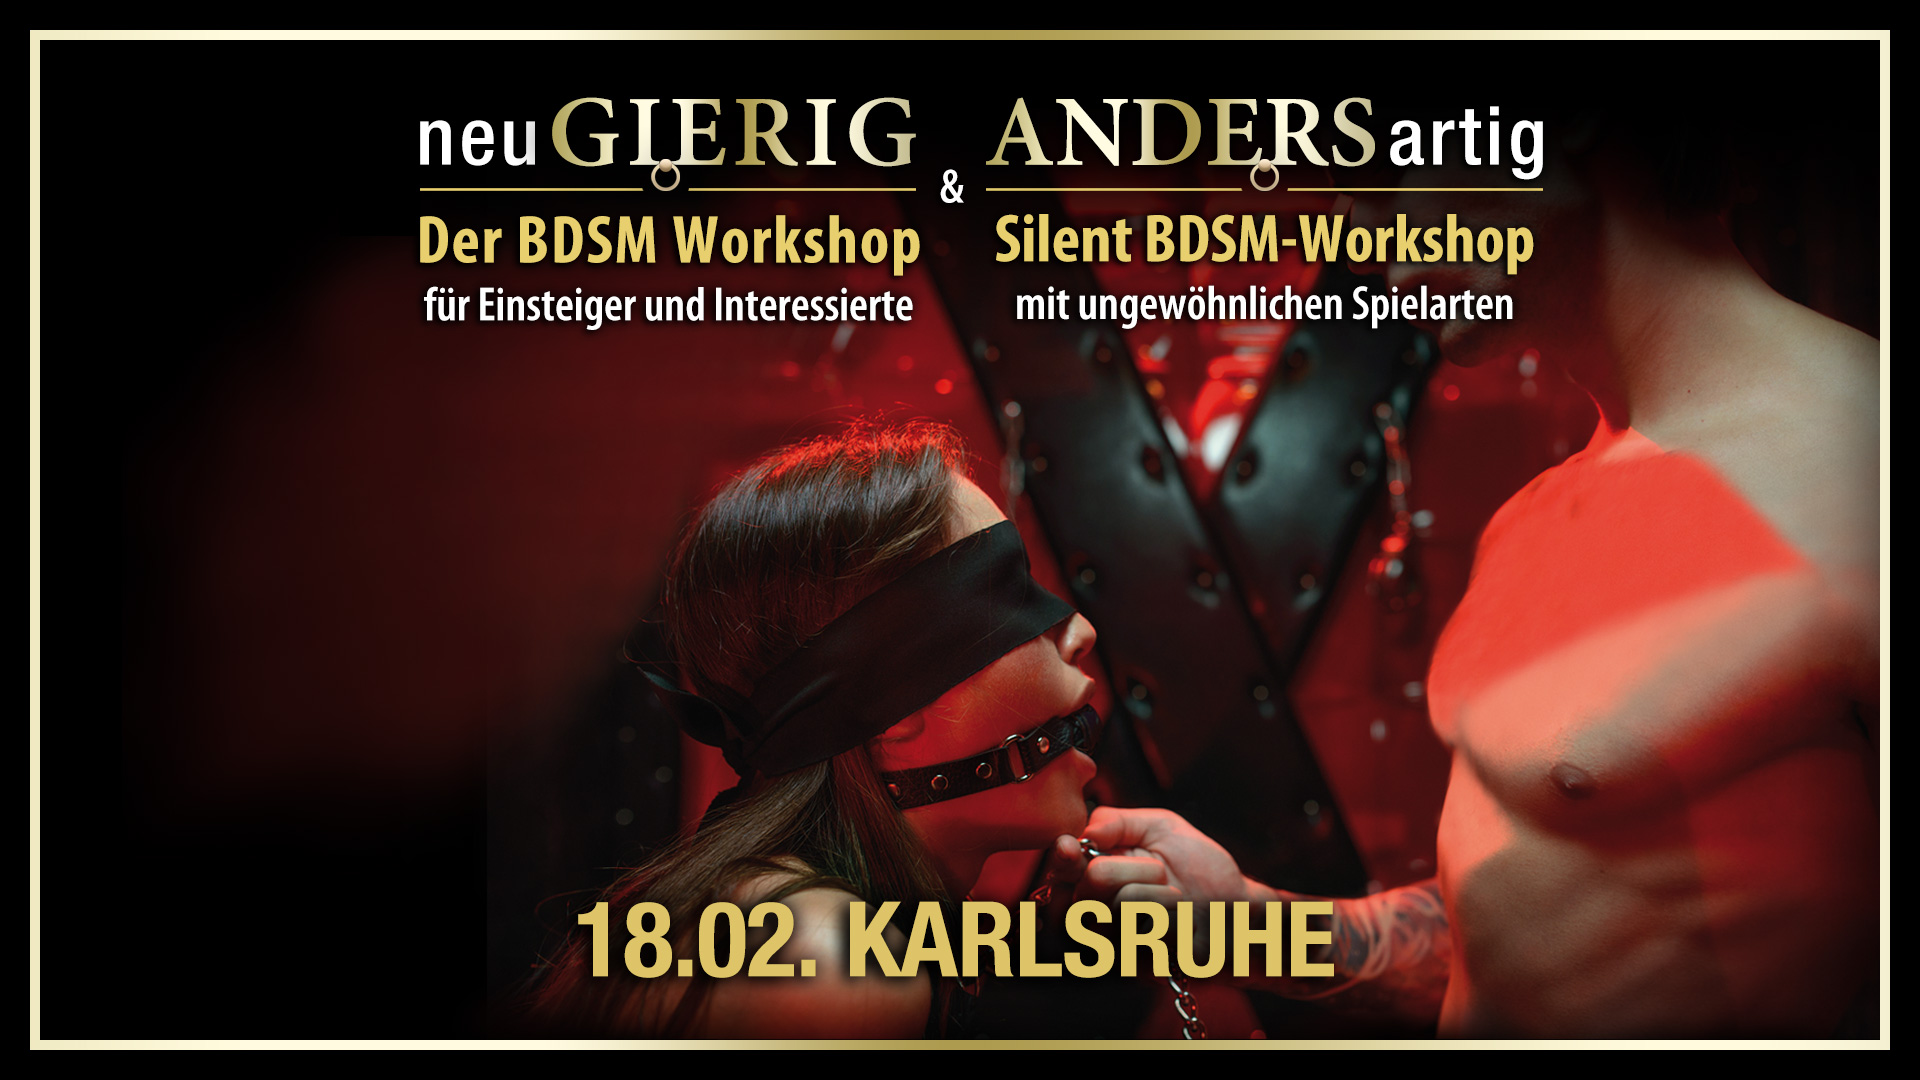 neuGIERIG » Der BDSM-Workshop für Einsteiger und Interessierte und ANDERSartig » Der BDSM-Workshop mit leisen Spielarten für das Spiel nach 22 Uhr, ungewöhnlichen Spieltechniken und Spielsachen sowie kreativen Spielideen mit GILLIAN in Karlsruhe.